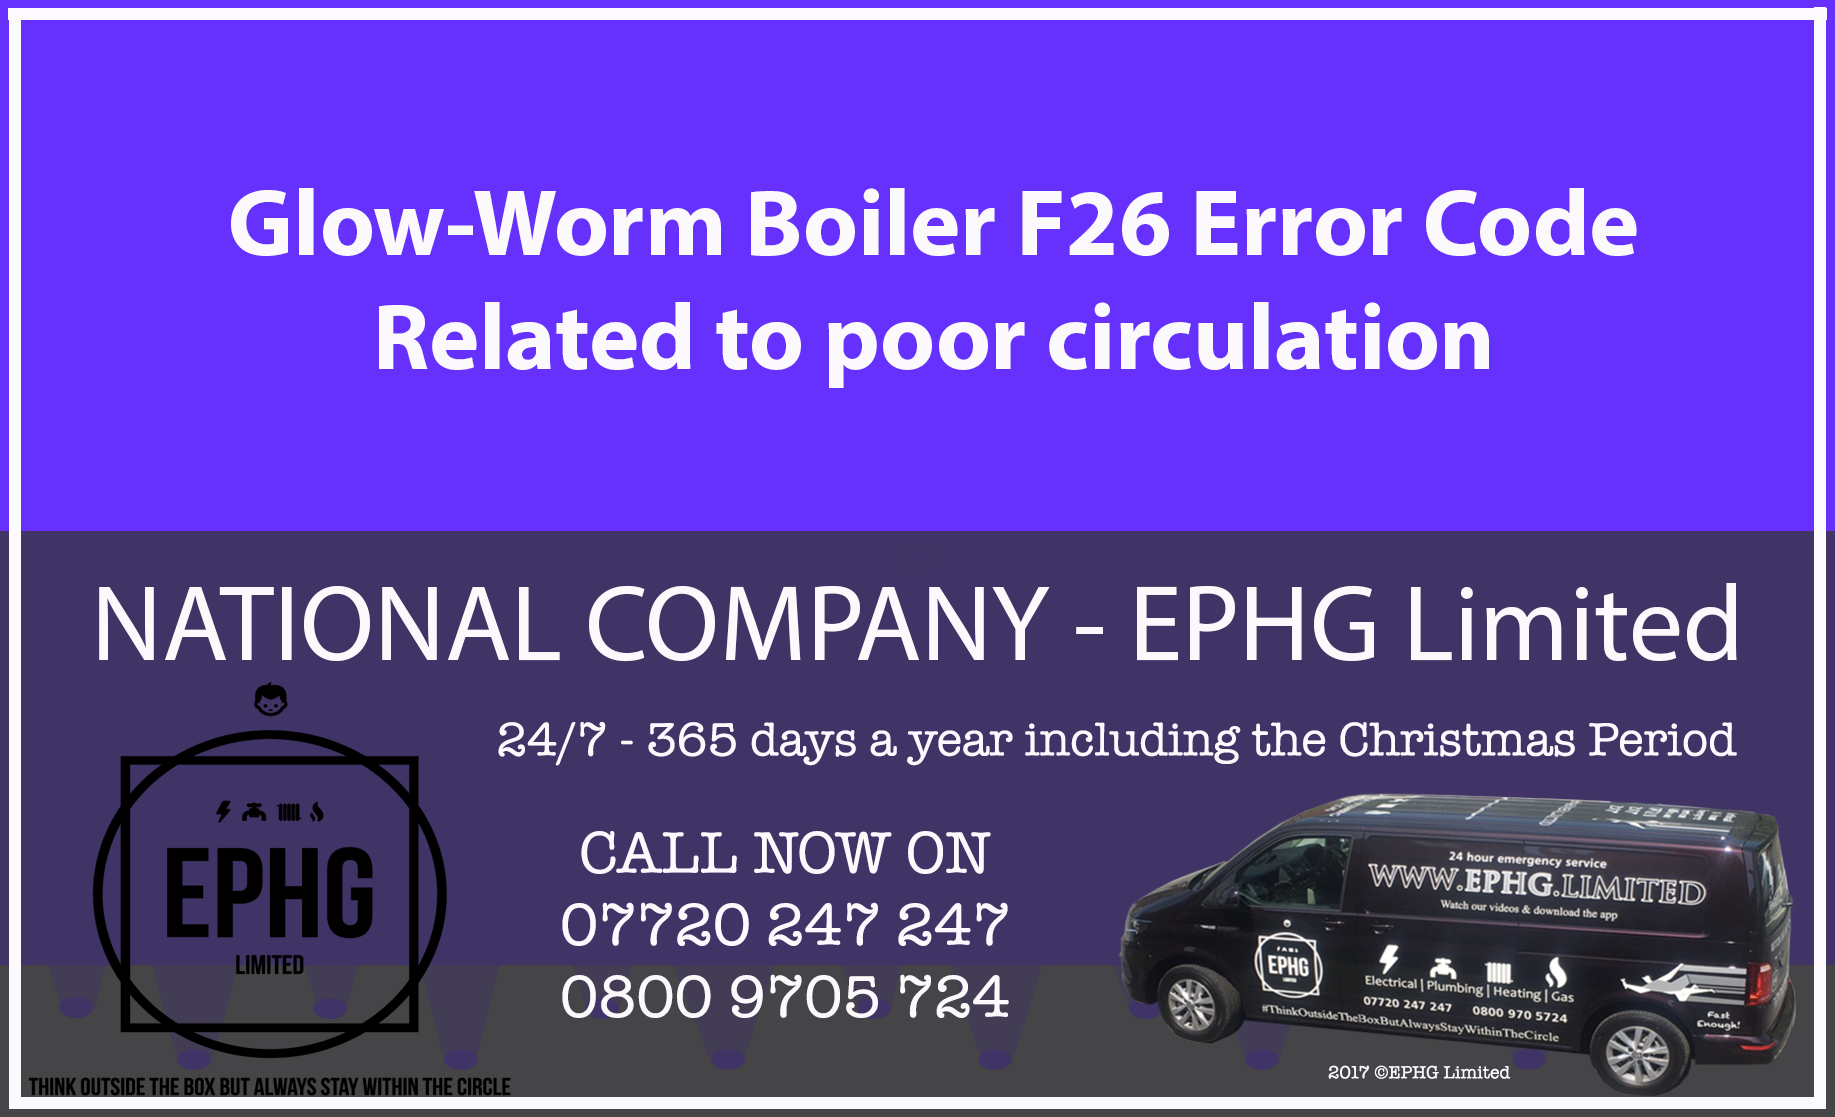 Glow-Worm boiler error code F26